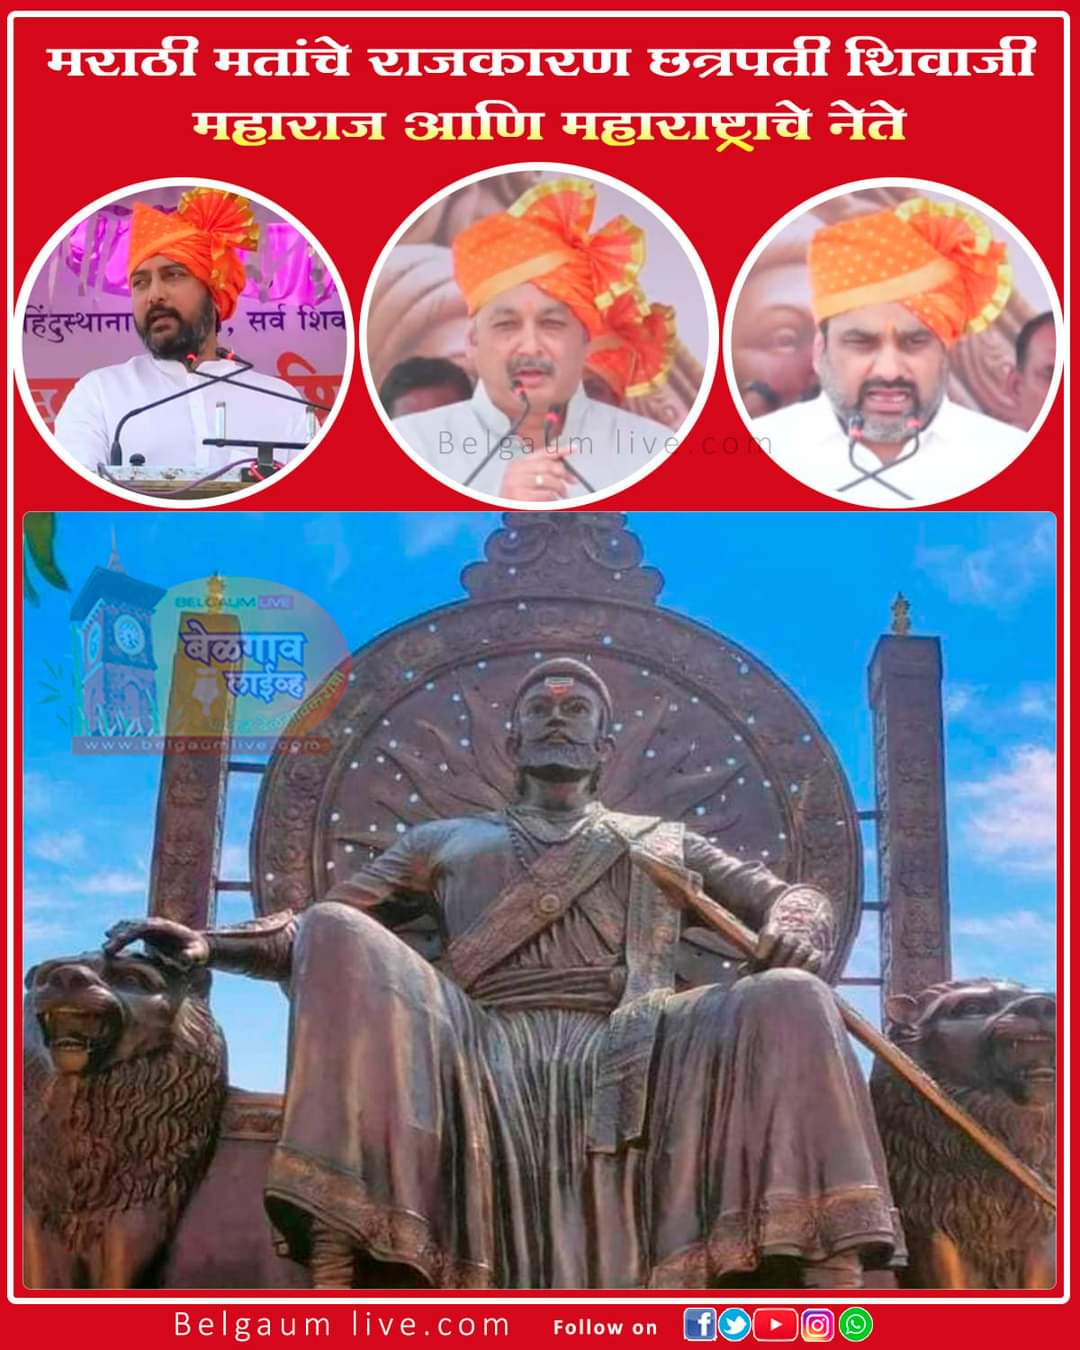 Maharashtra leaders 